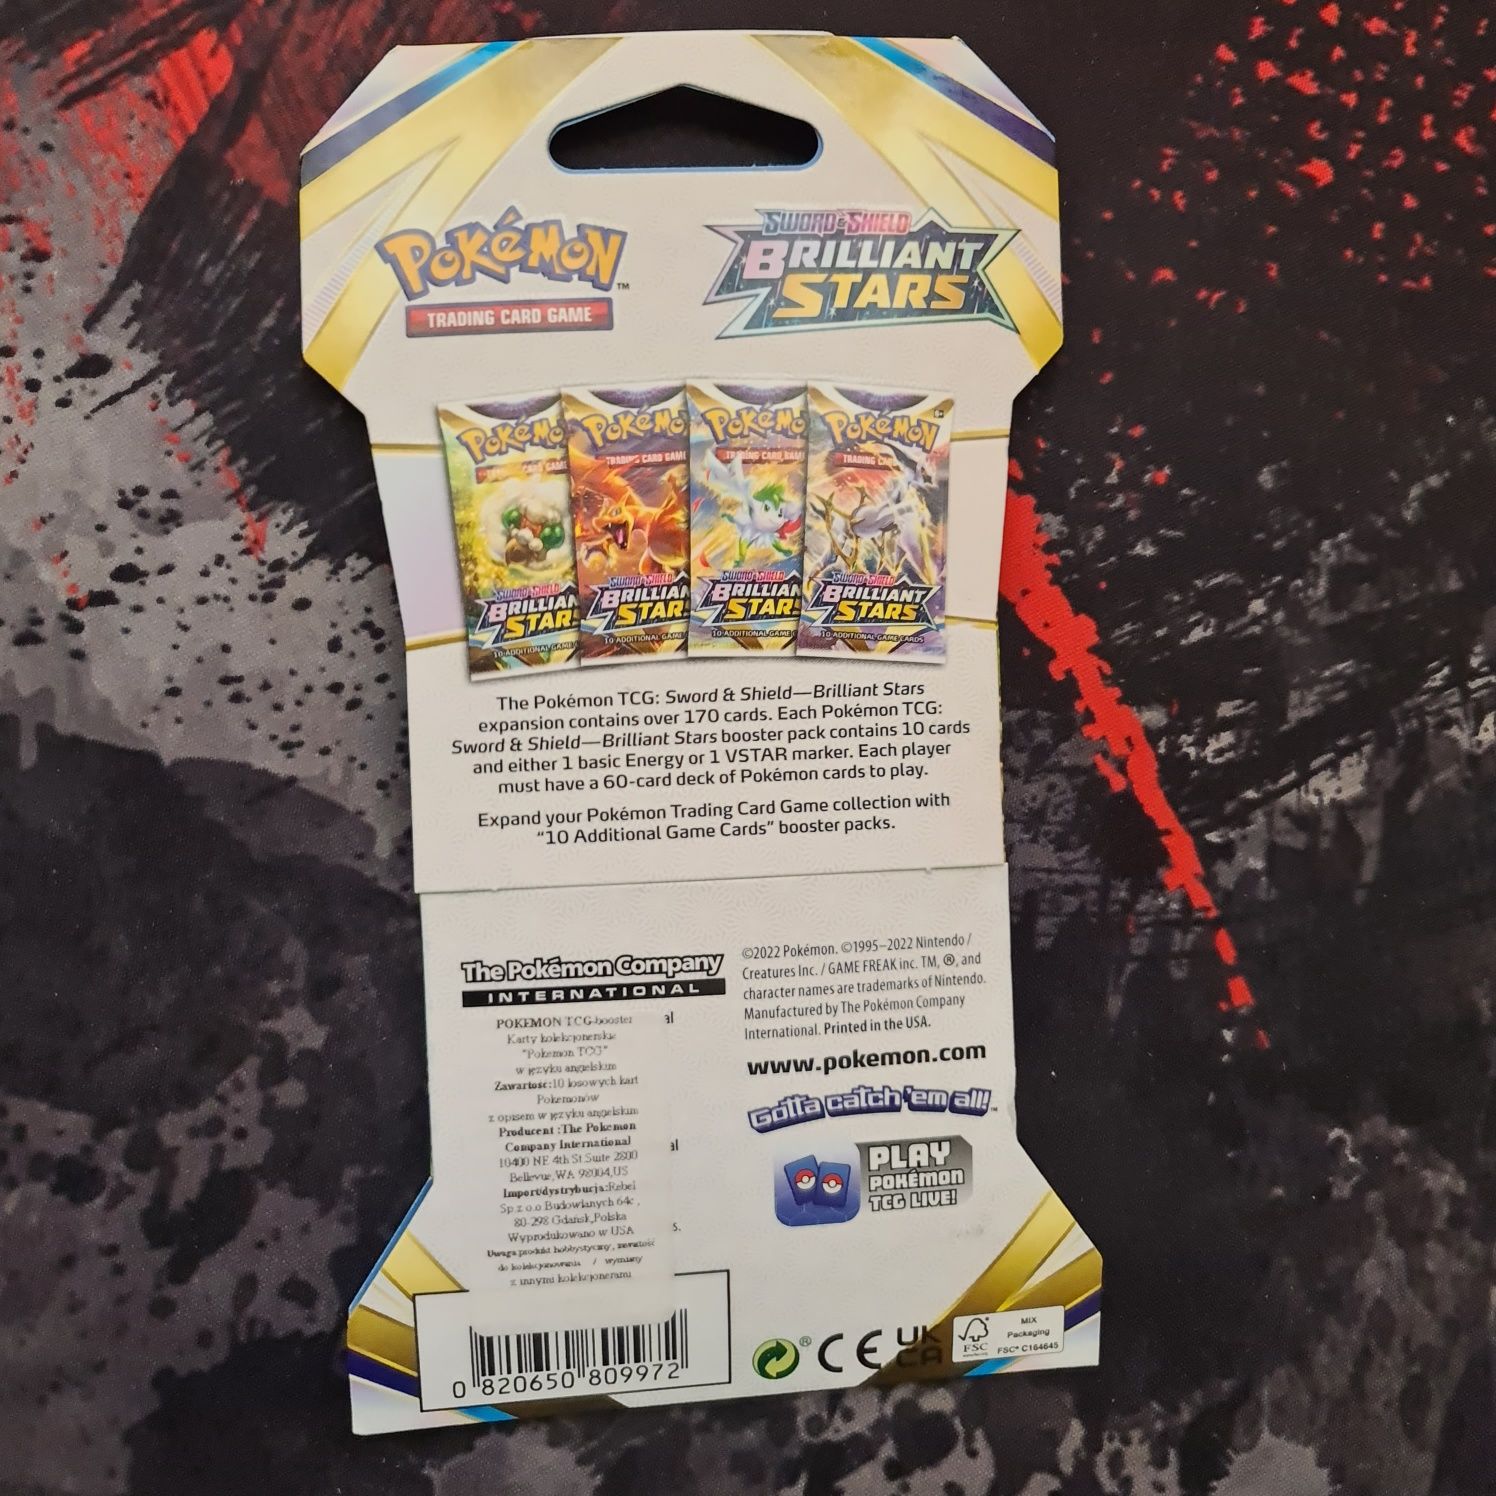 Pokemon TCG Brilliant Stars Booster
Odbiór.
Fabrycznie zapakowane.
Bra